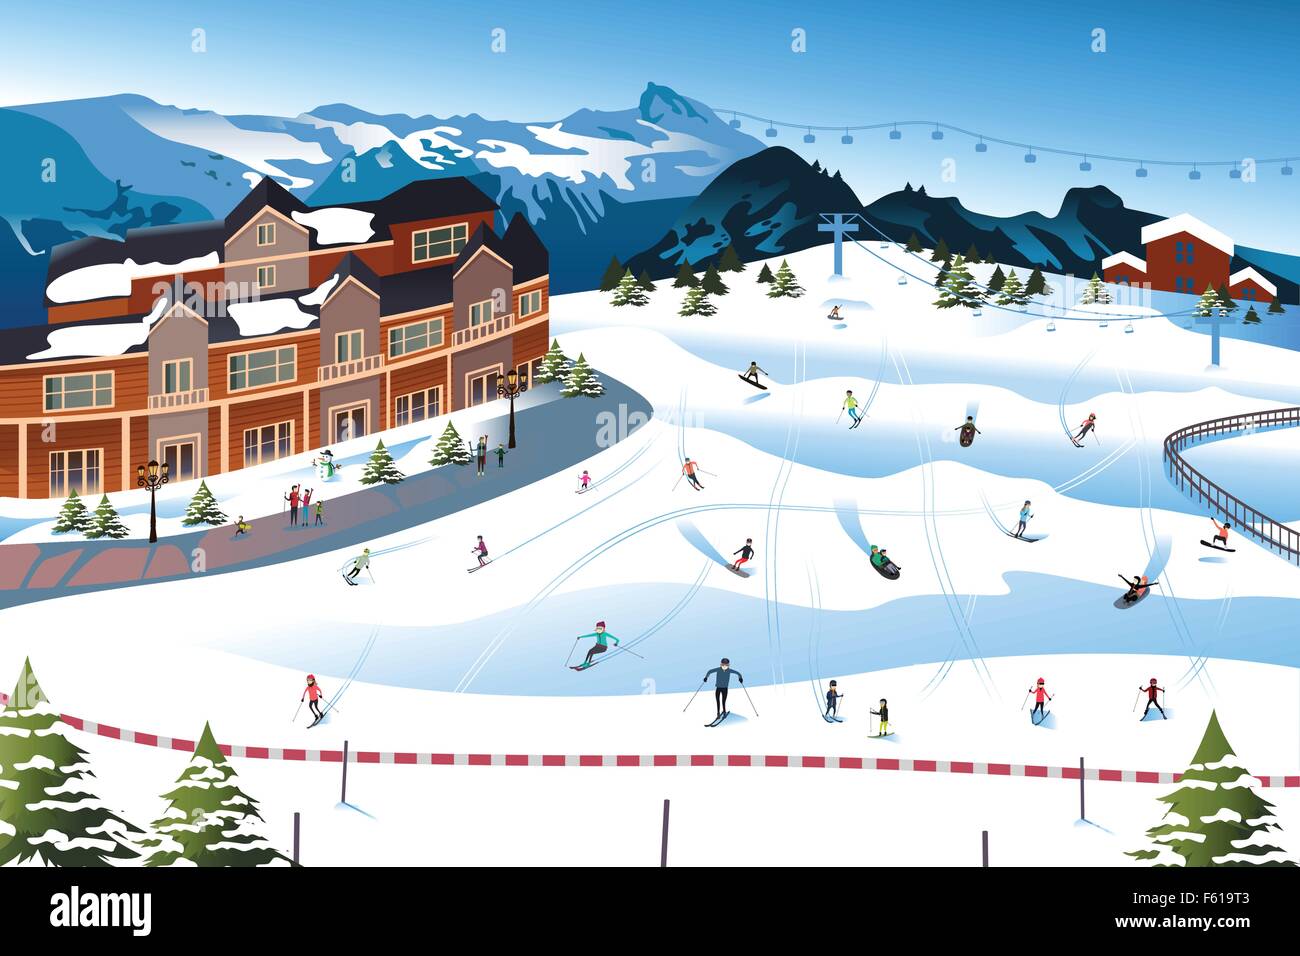 Un vecteur illustration de scène dans une station de ski Illustration de Vecteur